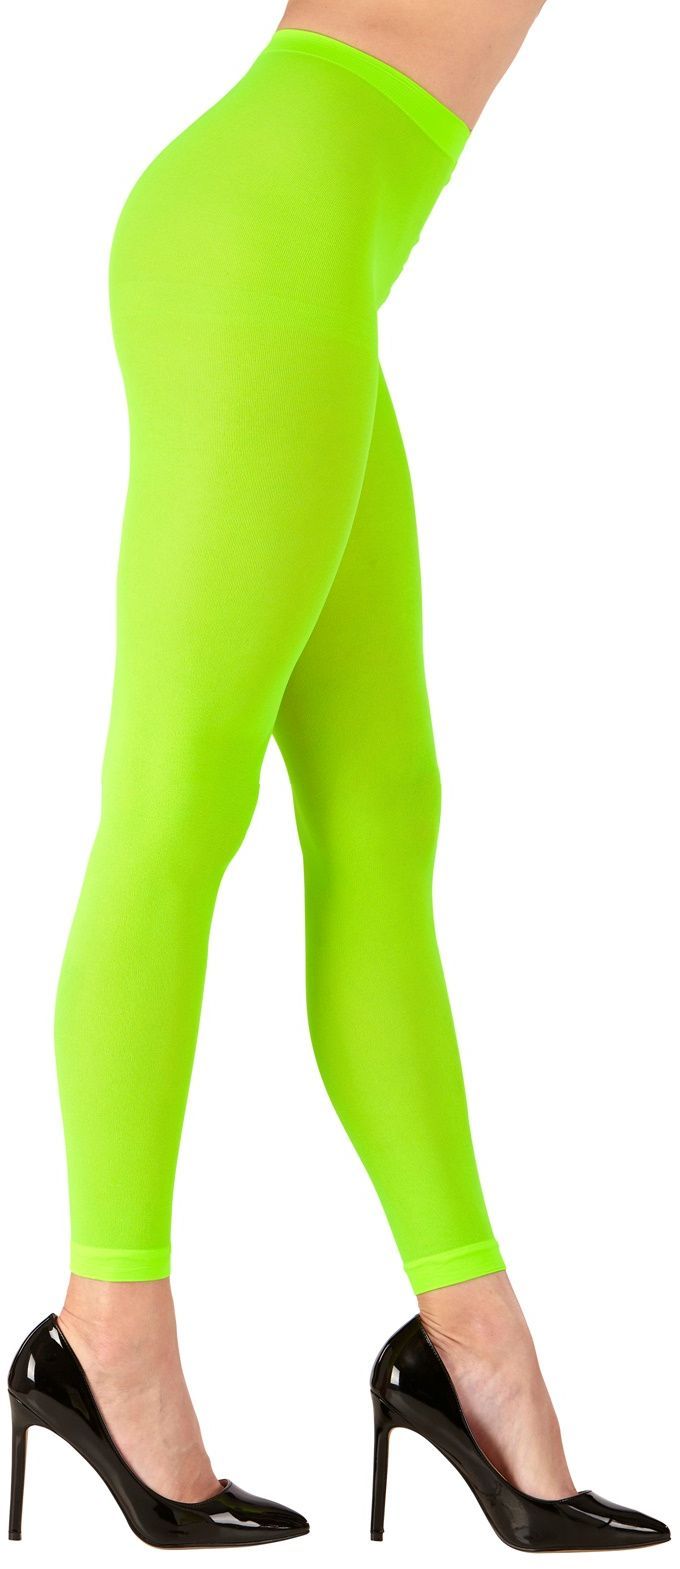 Groene neon legging One-size-volwassenen